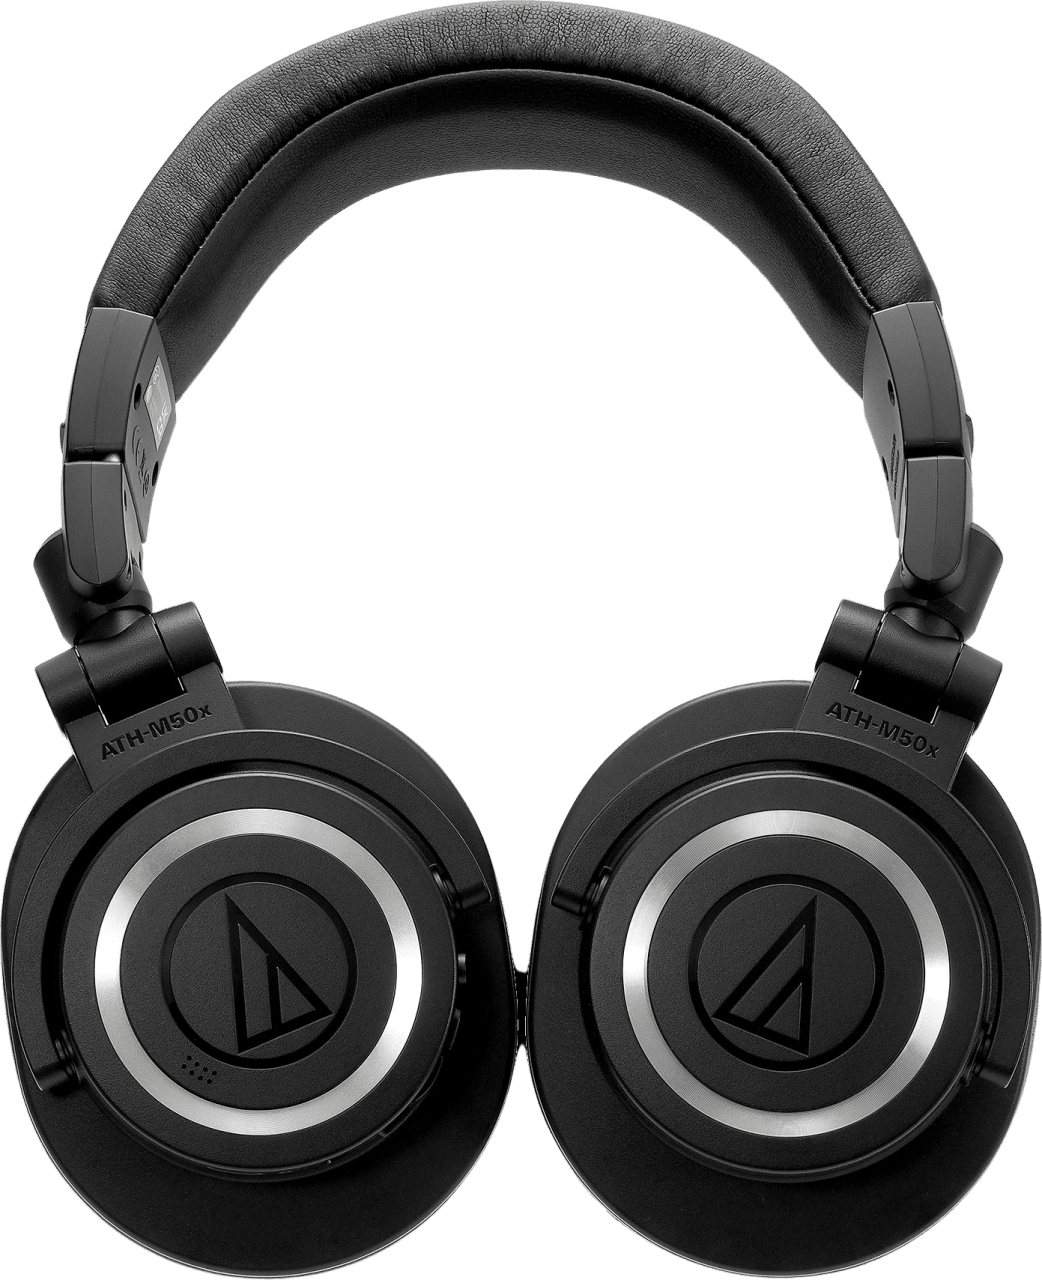 Schwarz Audio-Technica ATH-M50XBT2 Geschlossener, drahtloser, dynamischer Over-Ear-Monitor-Kopfhörer für professionelle Anwender.5